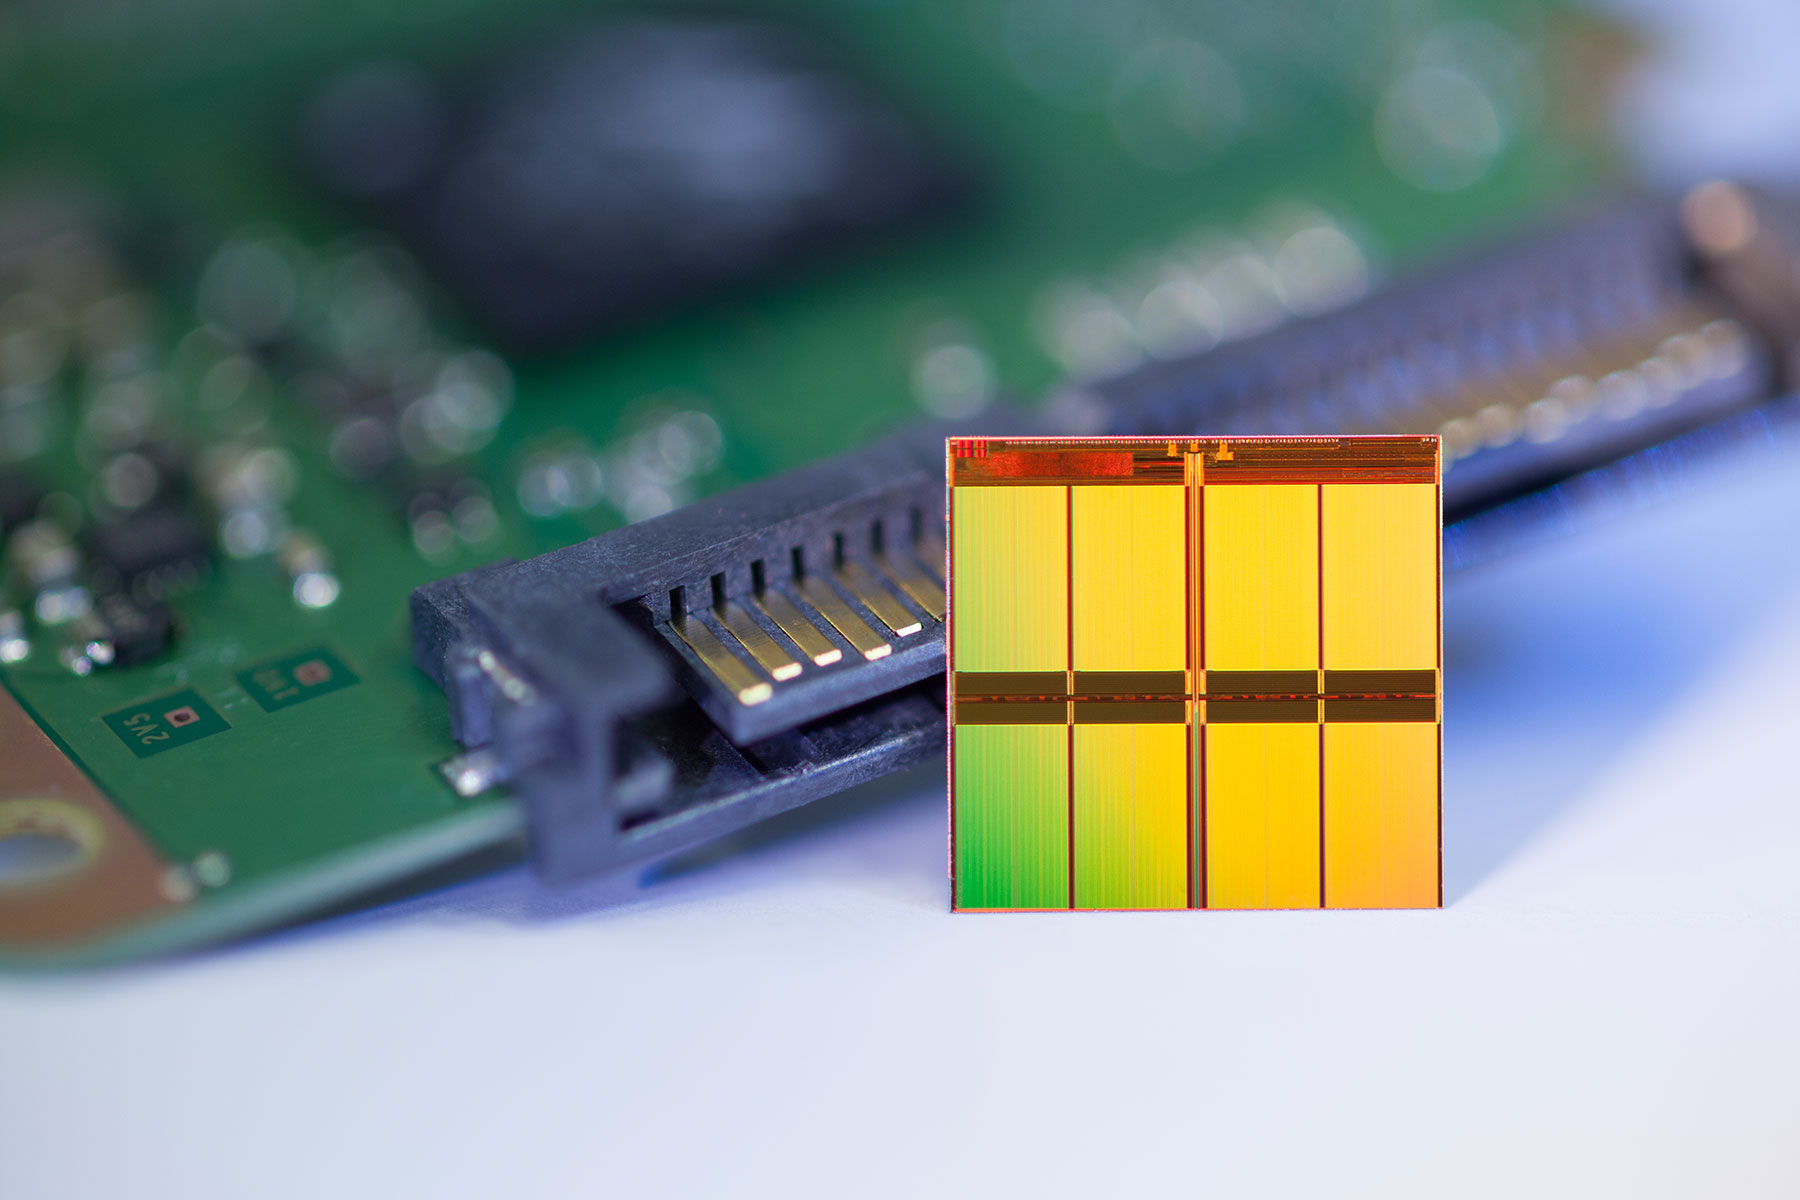 Чип памяти ssd. Чип NAND Flash. 3d-флэш-памяти NAND-типа. NAND-Flash — флэш-память NAND. Micron SSD Chip.